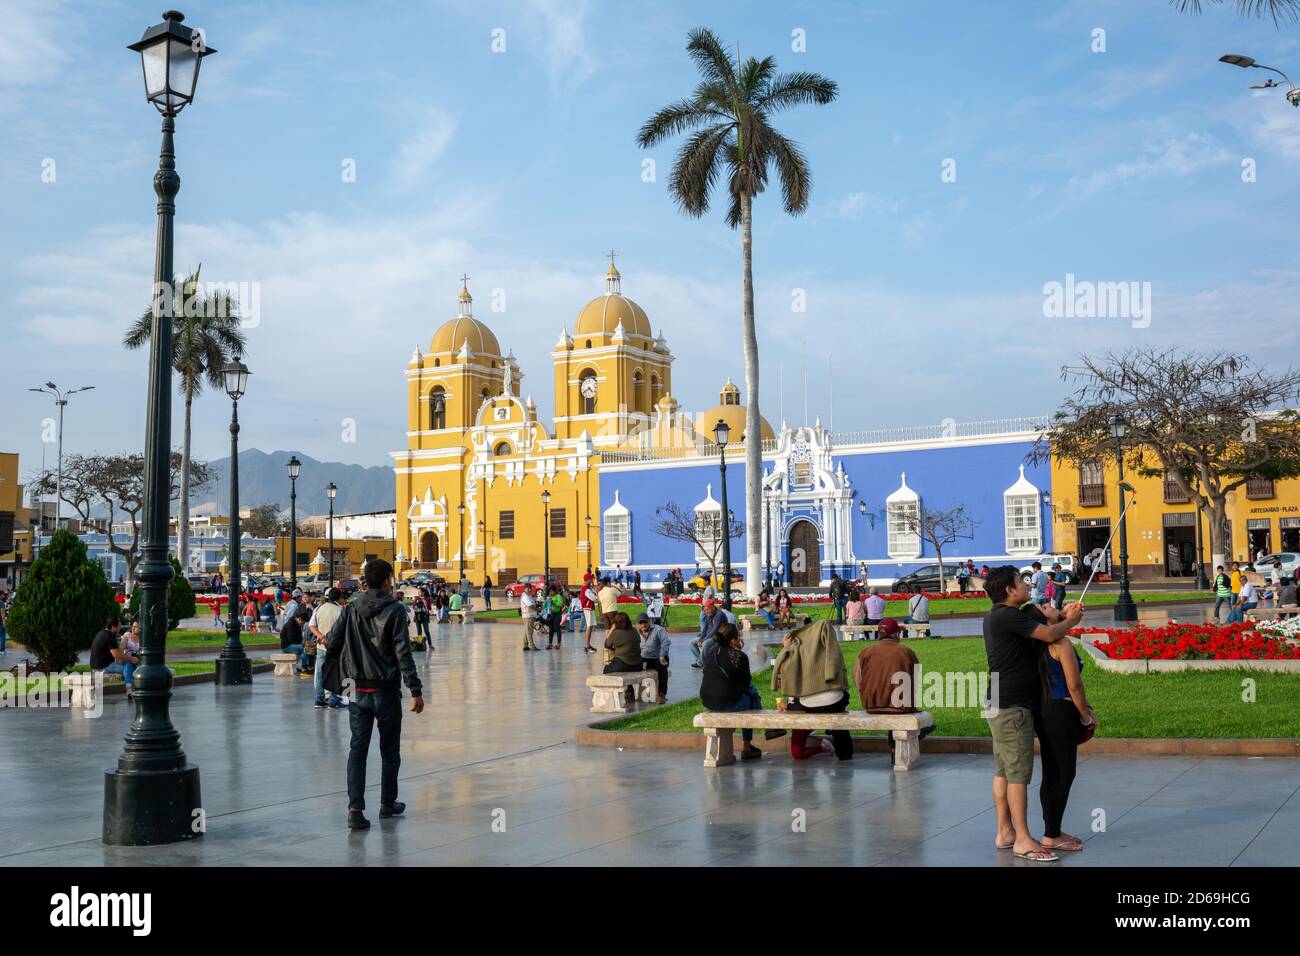 Der belebte koloniale Hauptplatz der Stadt Trujillo im Norden Perus mit der gelben Kathedrale von Santo Domingo und dem Bischofspalast in Blau. Stockfoto